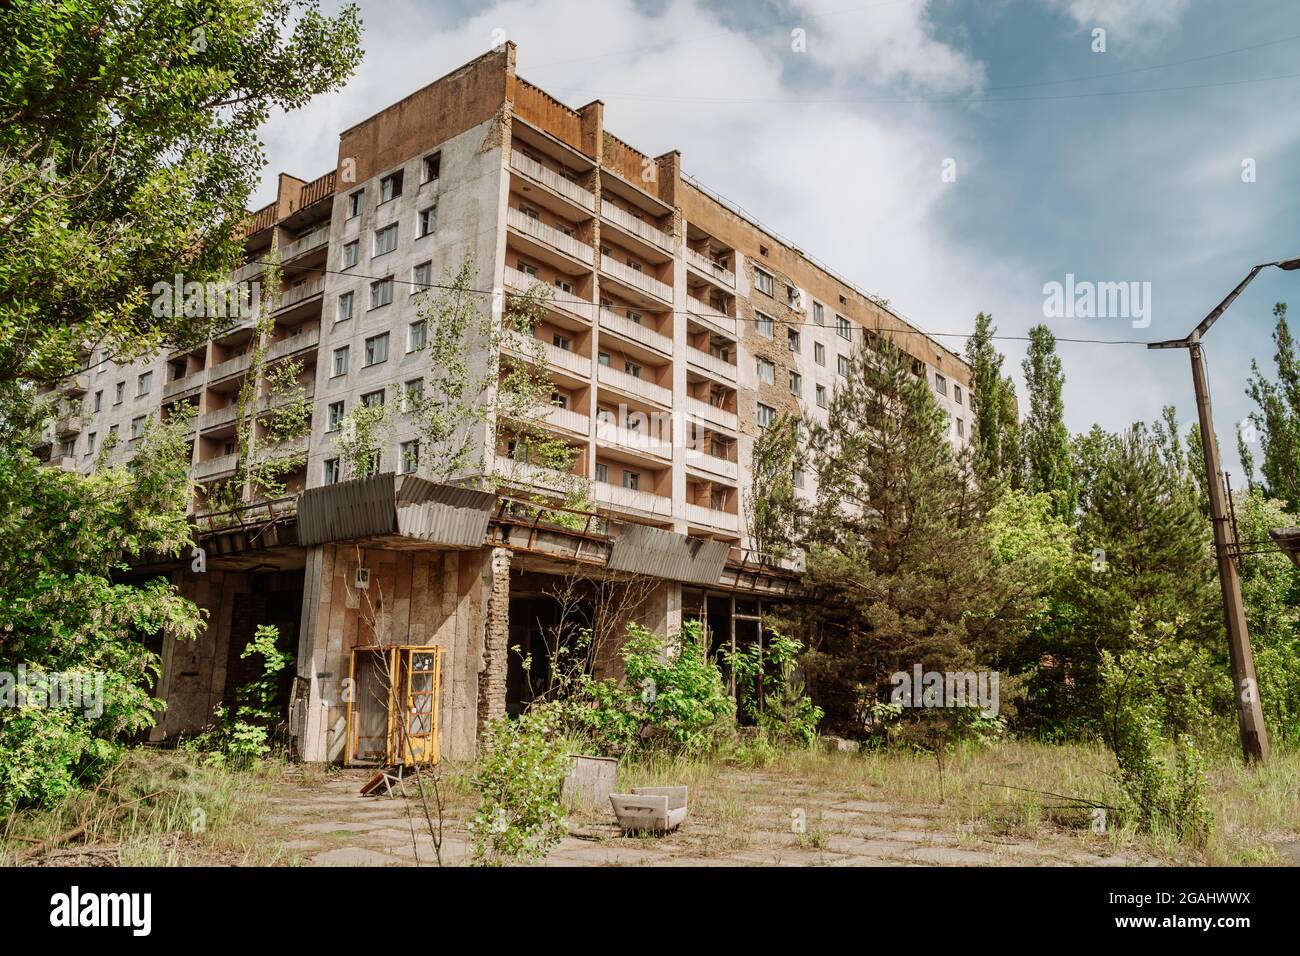 Abbandonati edifici sovietici in decadimento nella città di Pripyat, Ucraina - evacuati dopo il disastro di Chernobyl Foto Stock